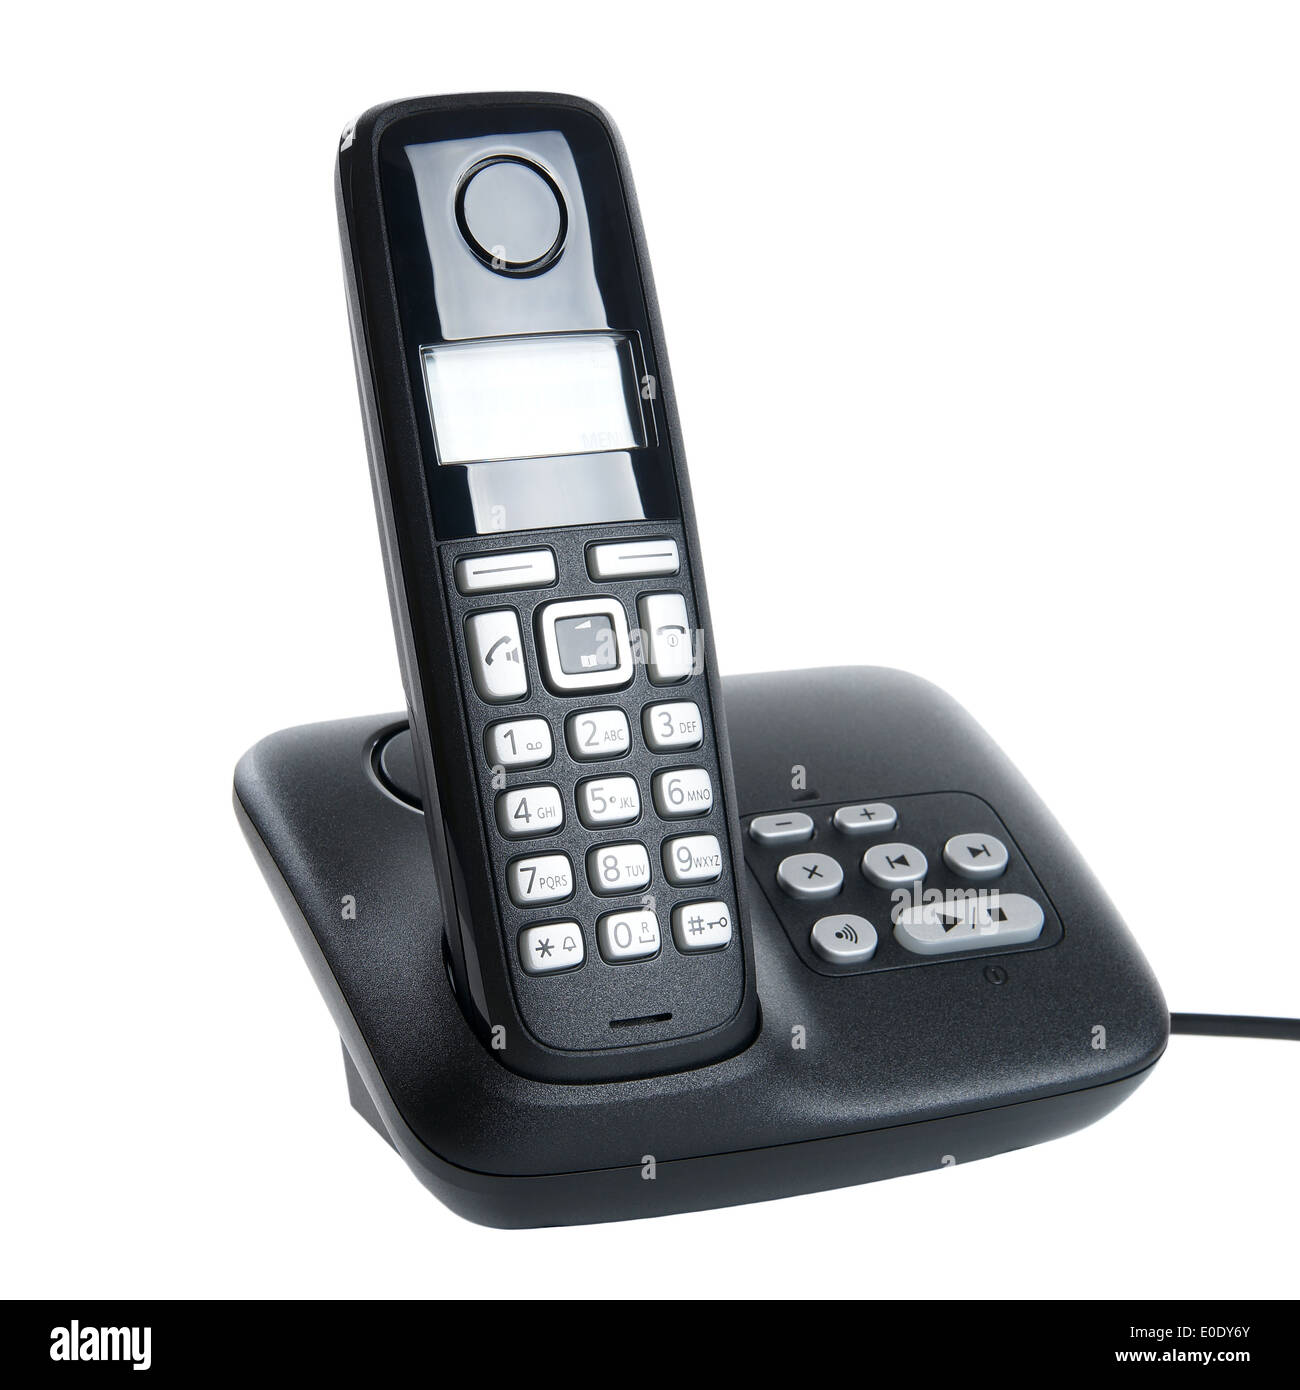 DECT-Telefon mit Basisstation und Anrufbeantworter Stockfotografie - Alamy